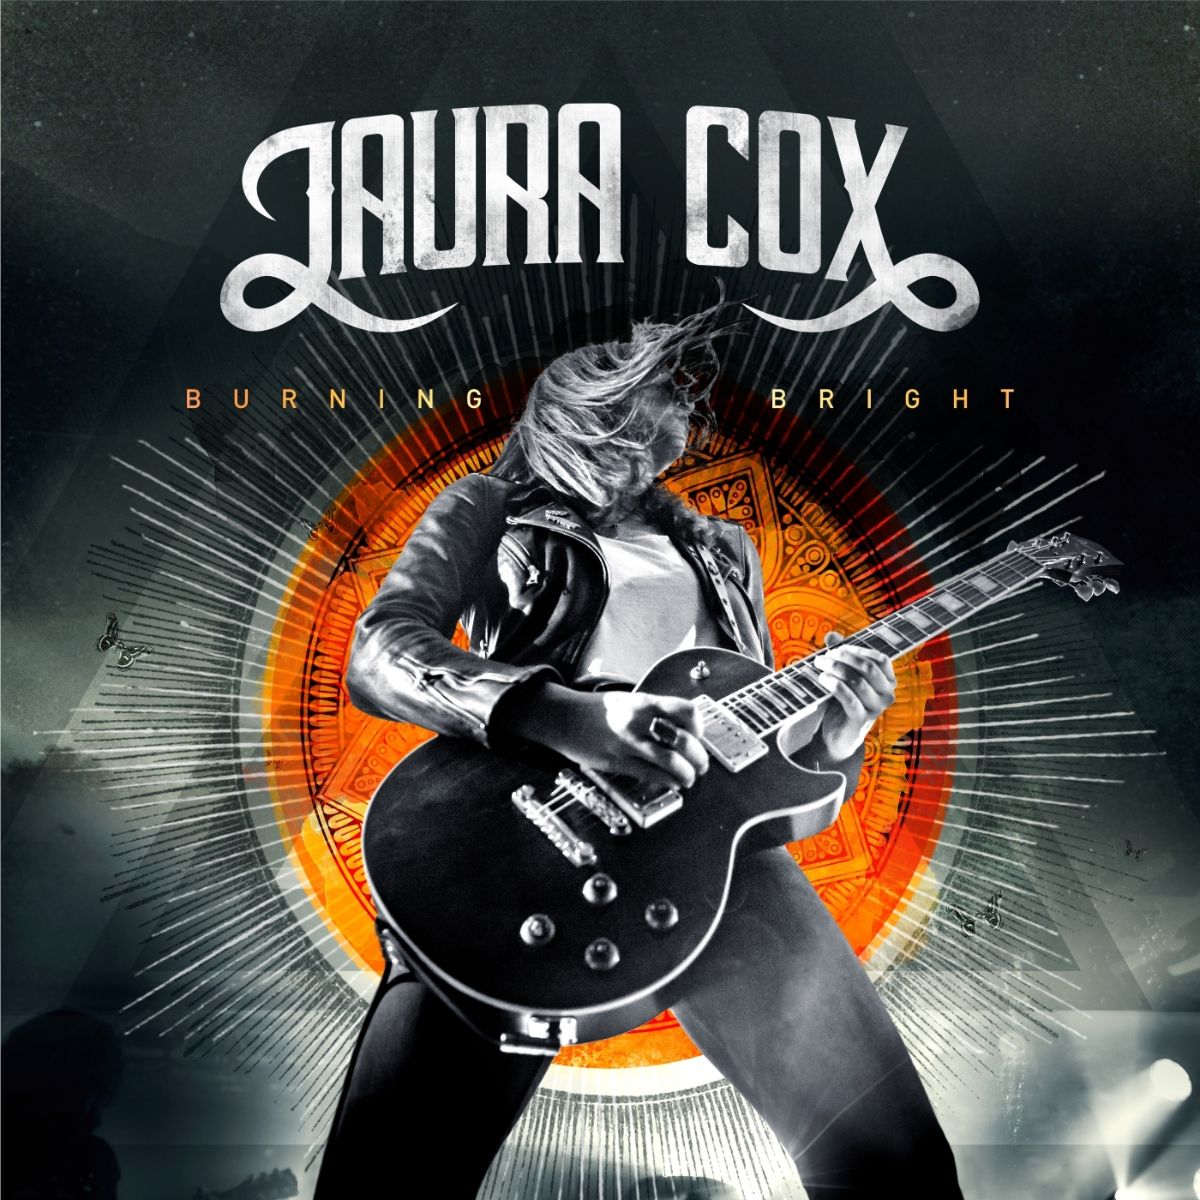 LAURA COX – Burning bright